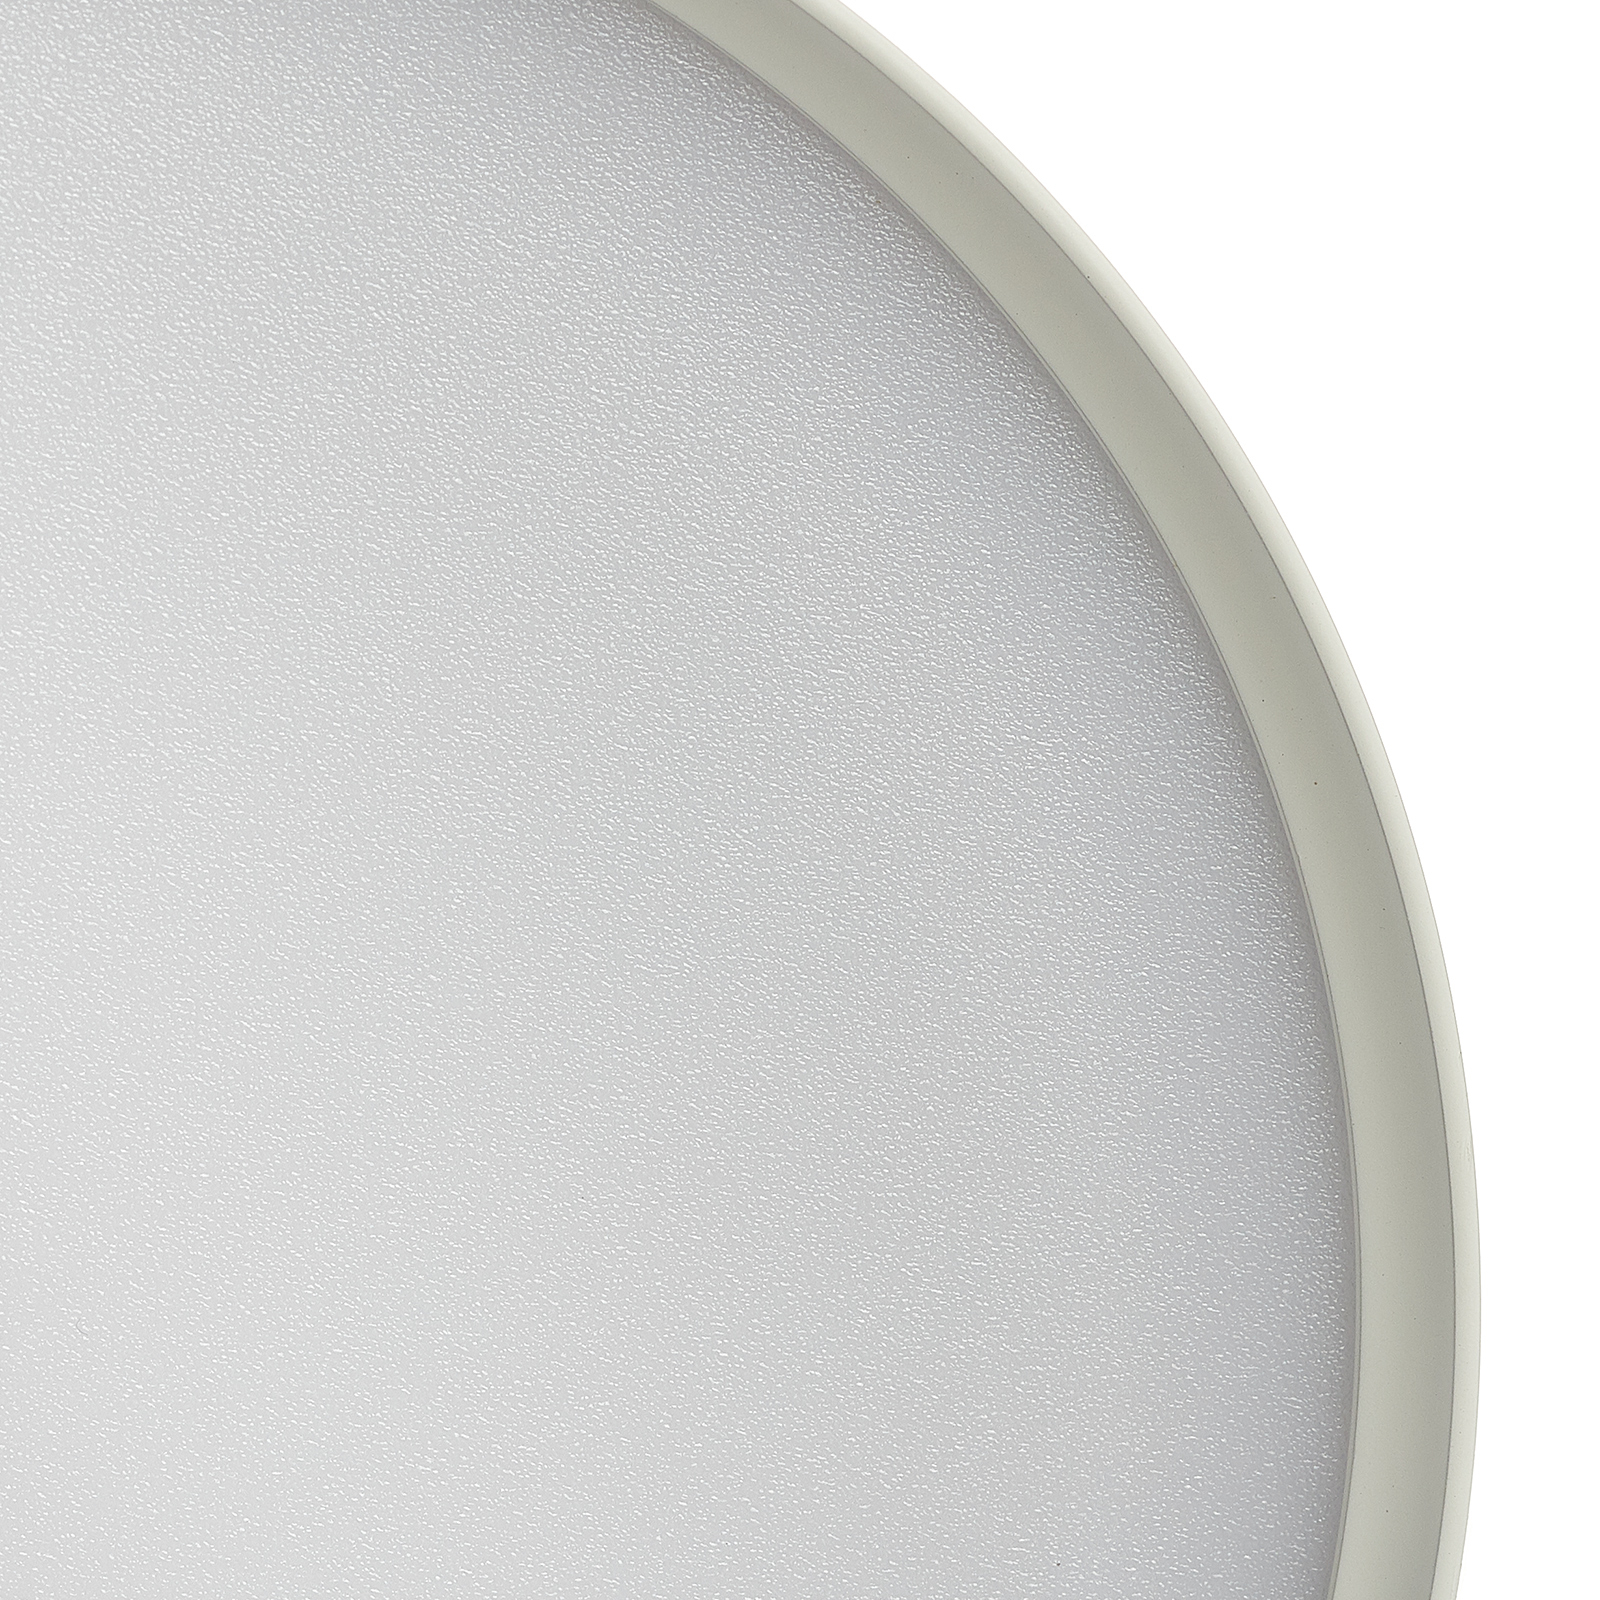 Mine-LED-kattovalaisin valkoinen, Ø 12 cm